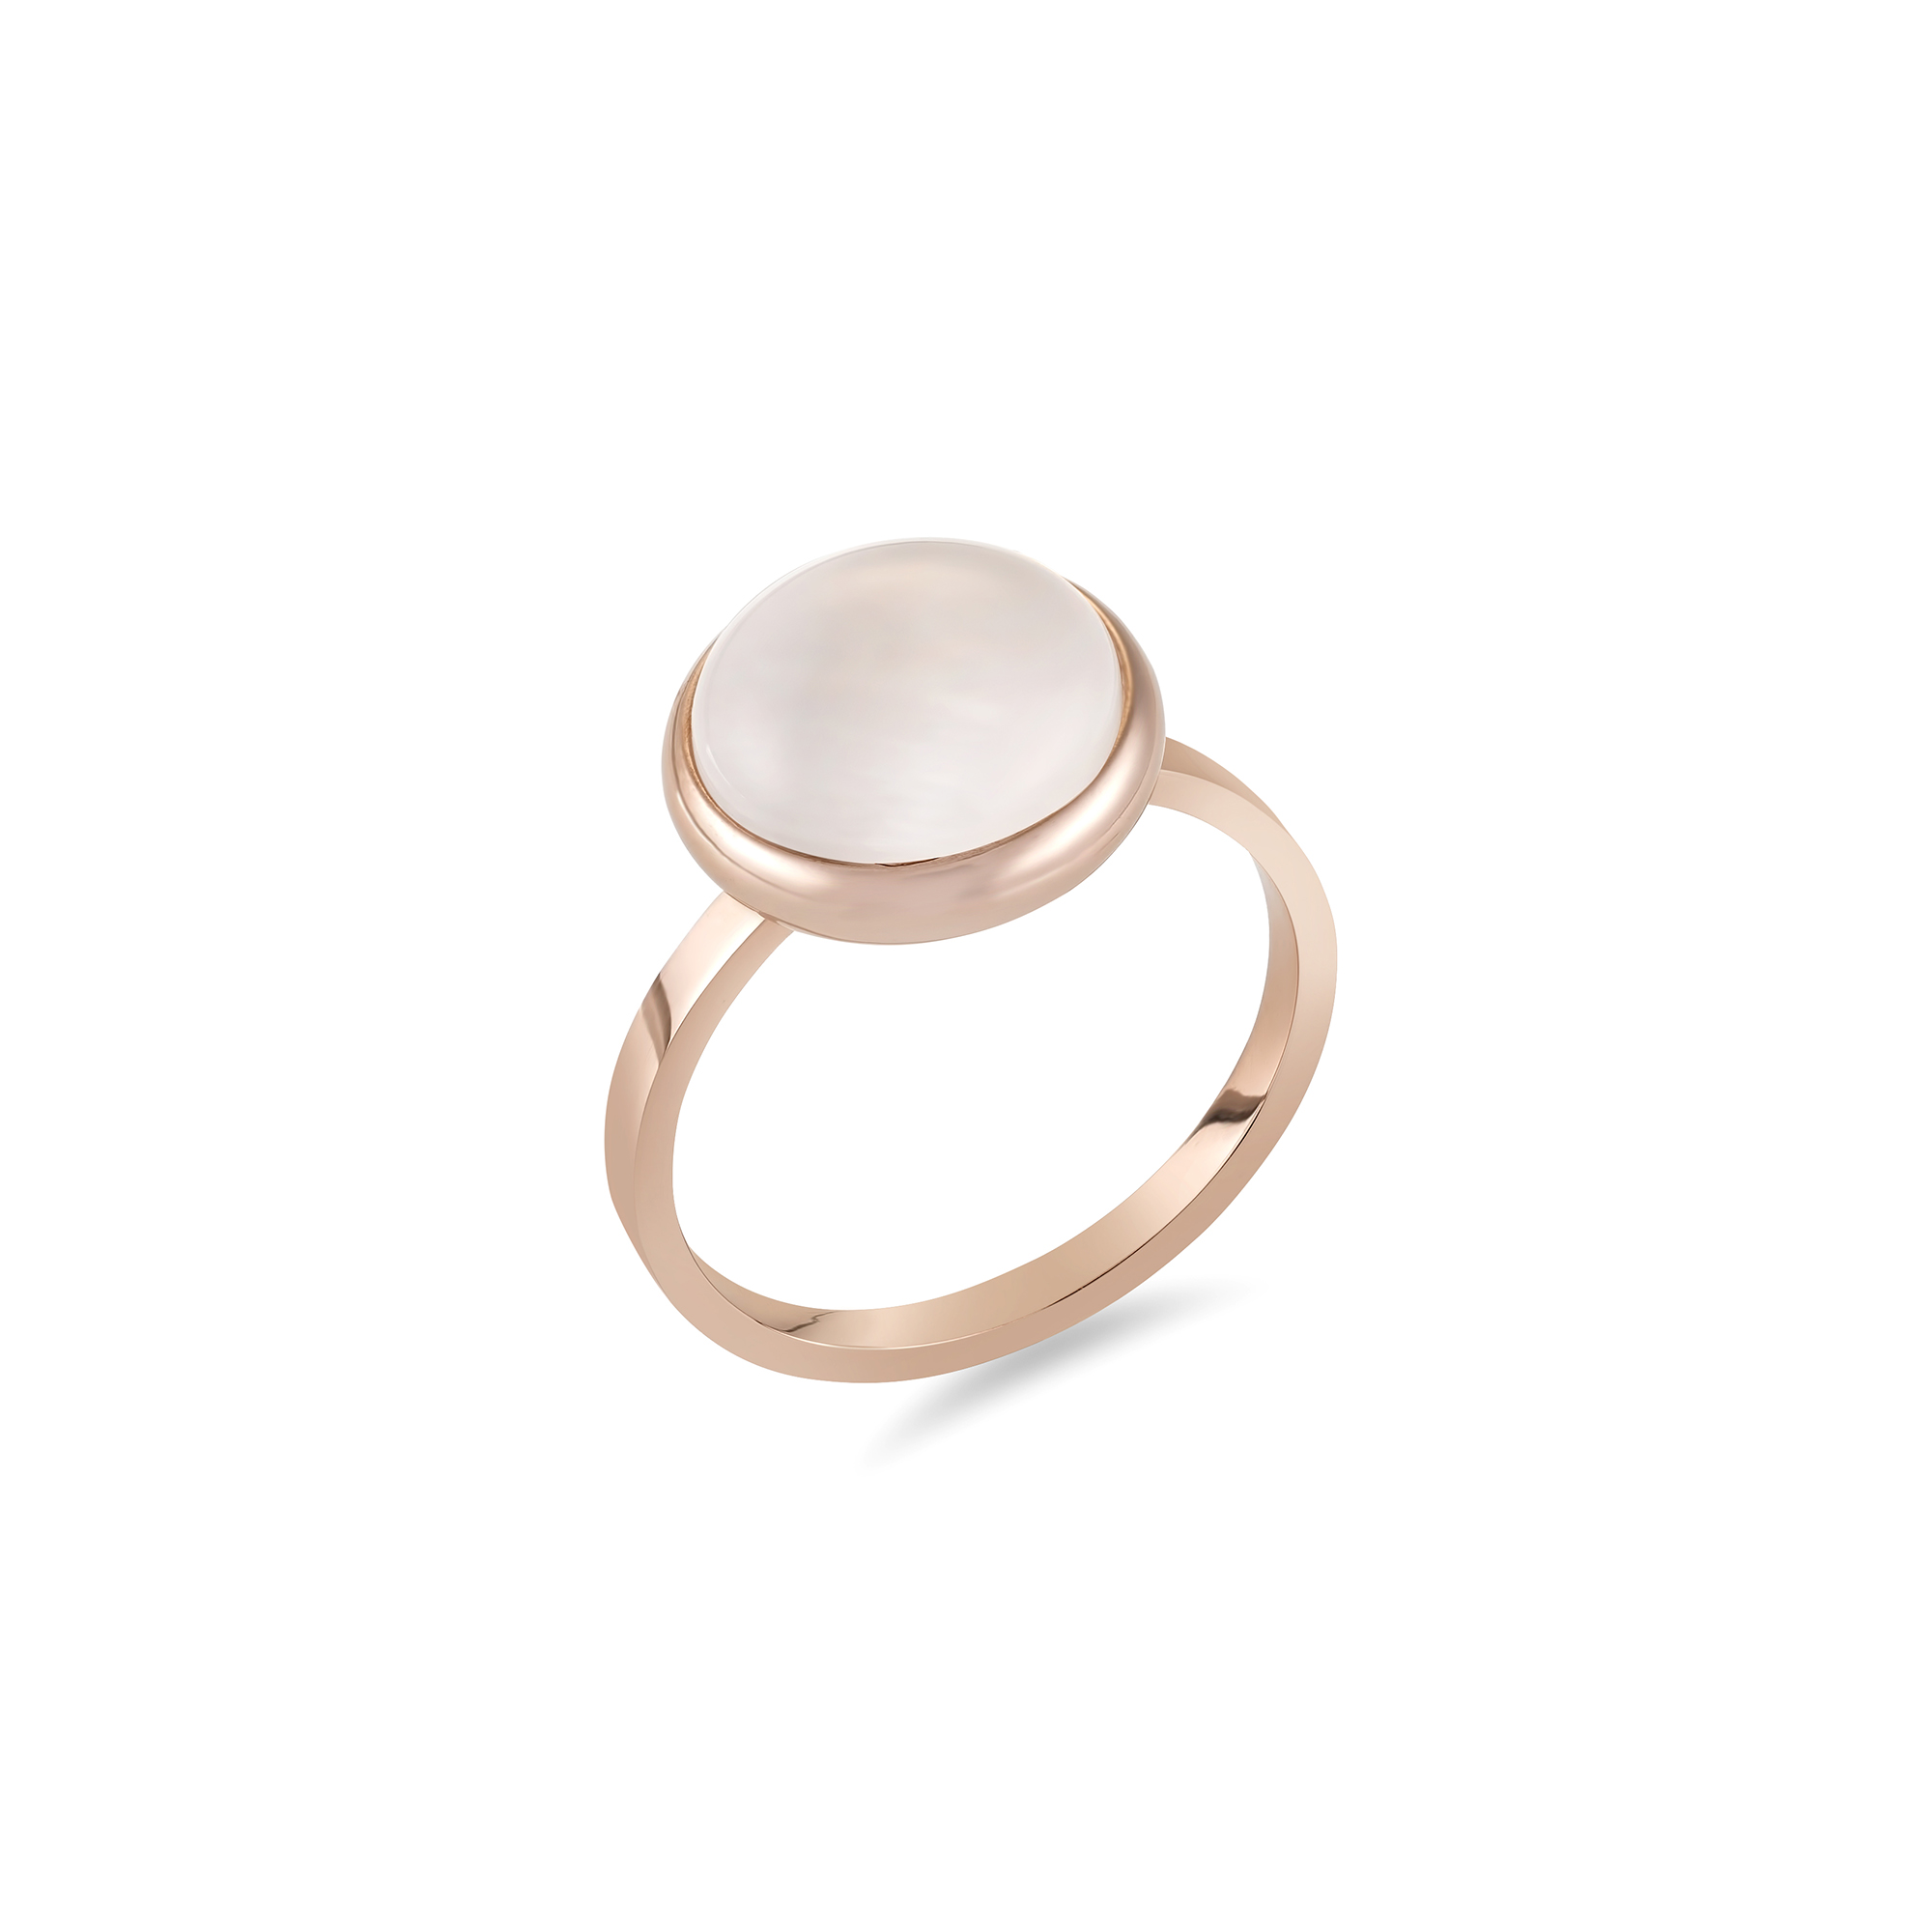 20 x Rose Gold Opal Pearl Ring Size Variation (4 sizes, 5pcs per size) UK SELLER l GCJ052